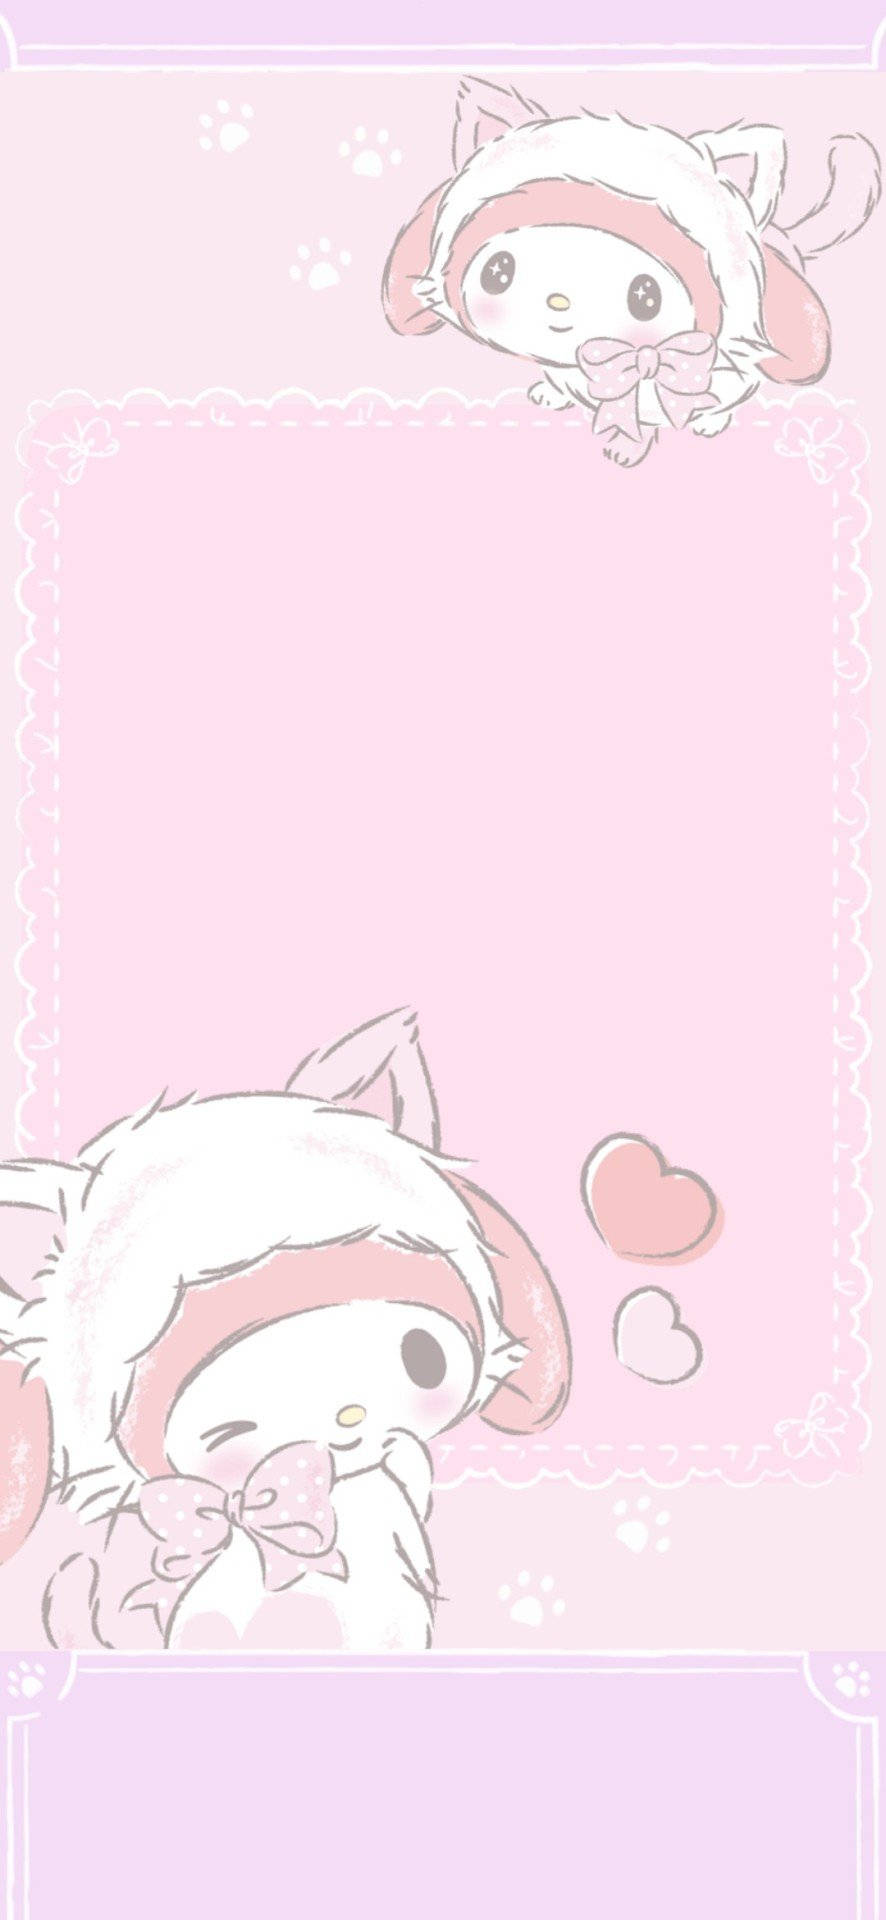 "Cute and joyful, Sanrio brings smiles to everyone." Wallpaper